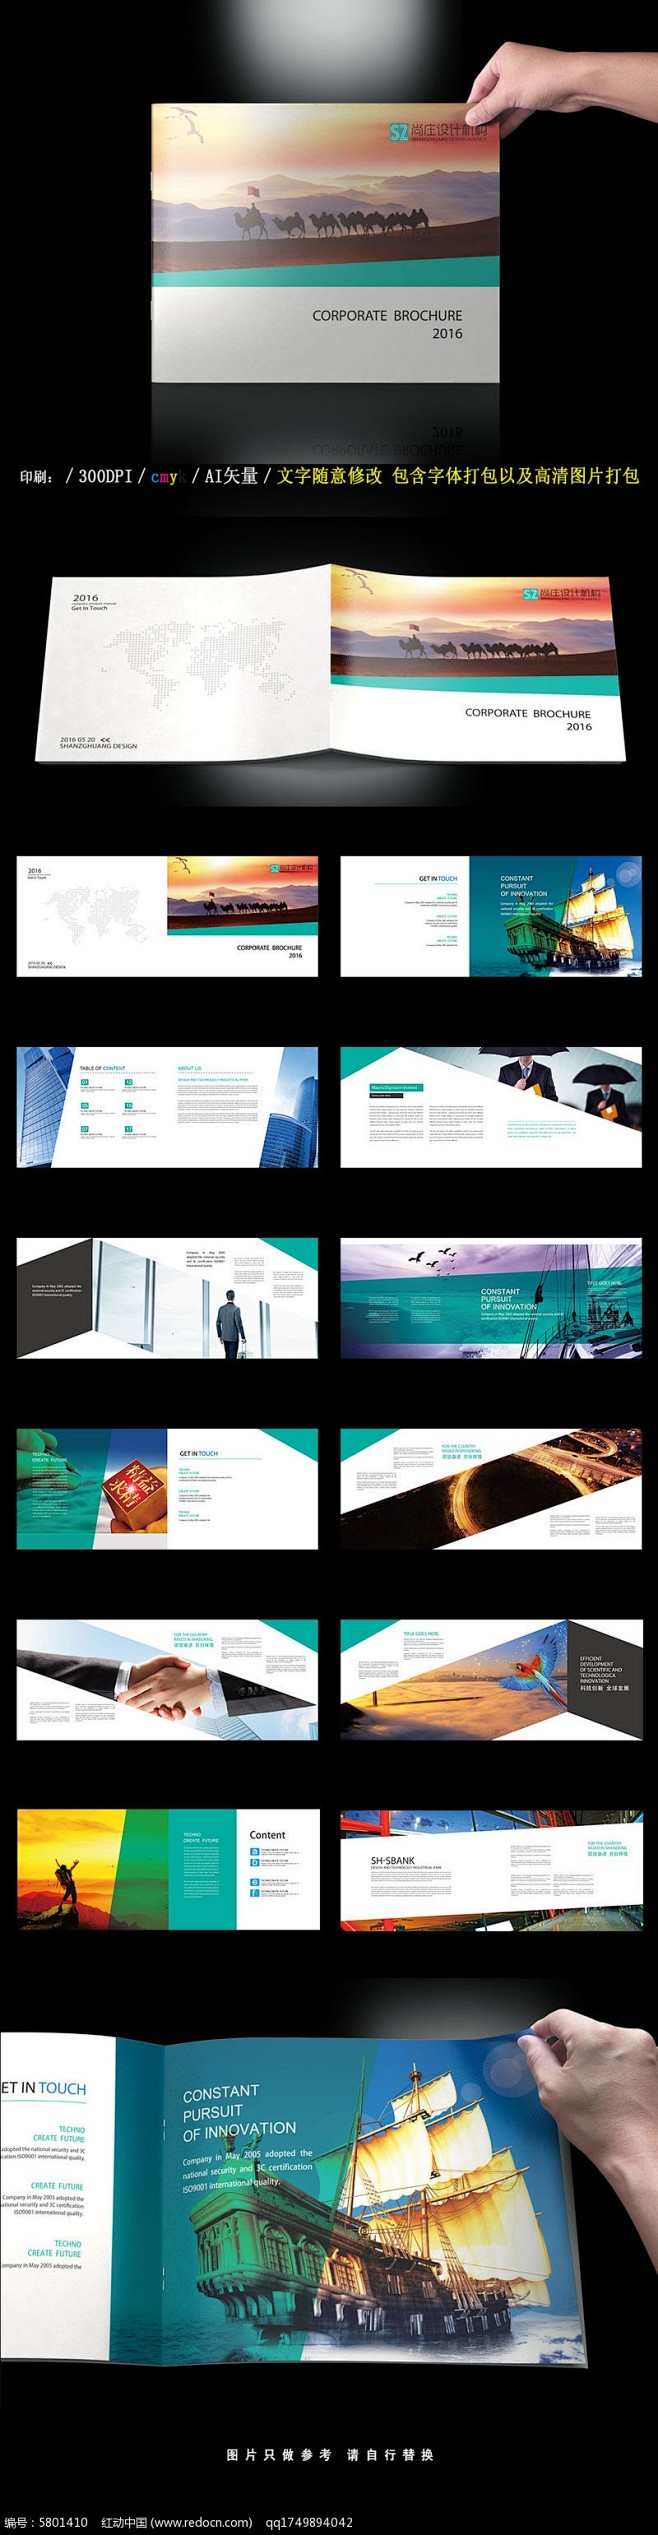 2016蓝色通用整套企业画册设计AI素材...